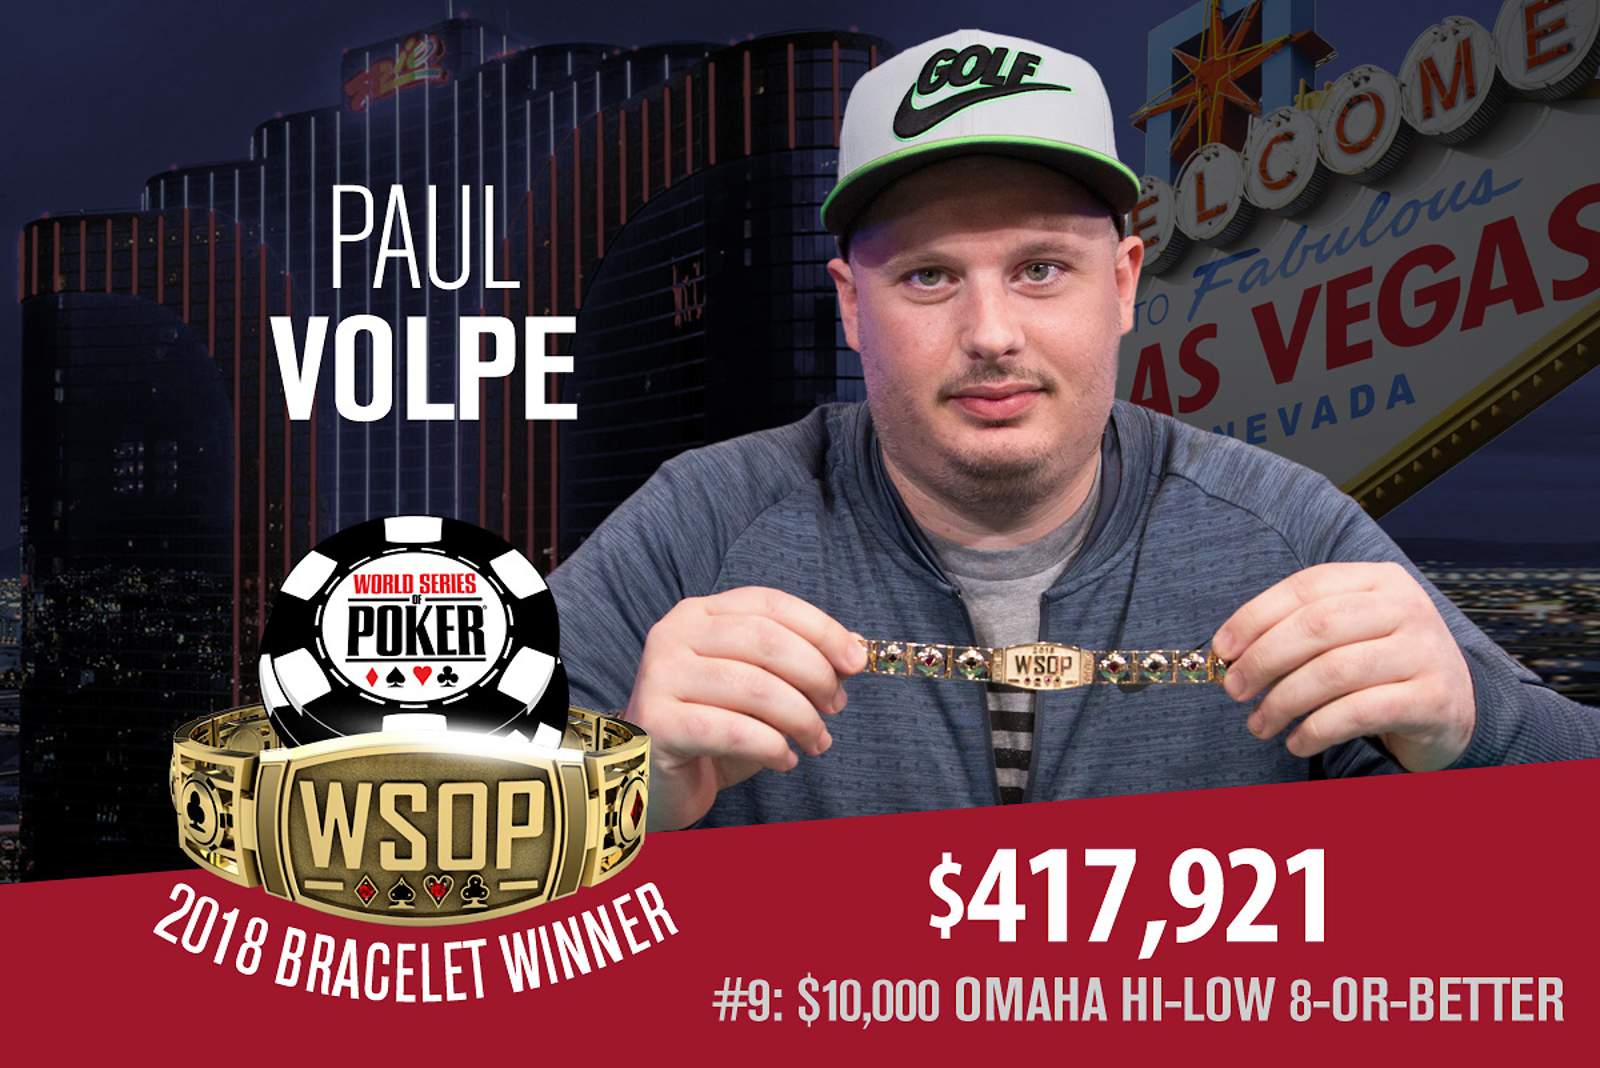 Paul Volpe Wins WSOP Bracelet #3 on PokerGO